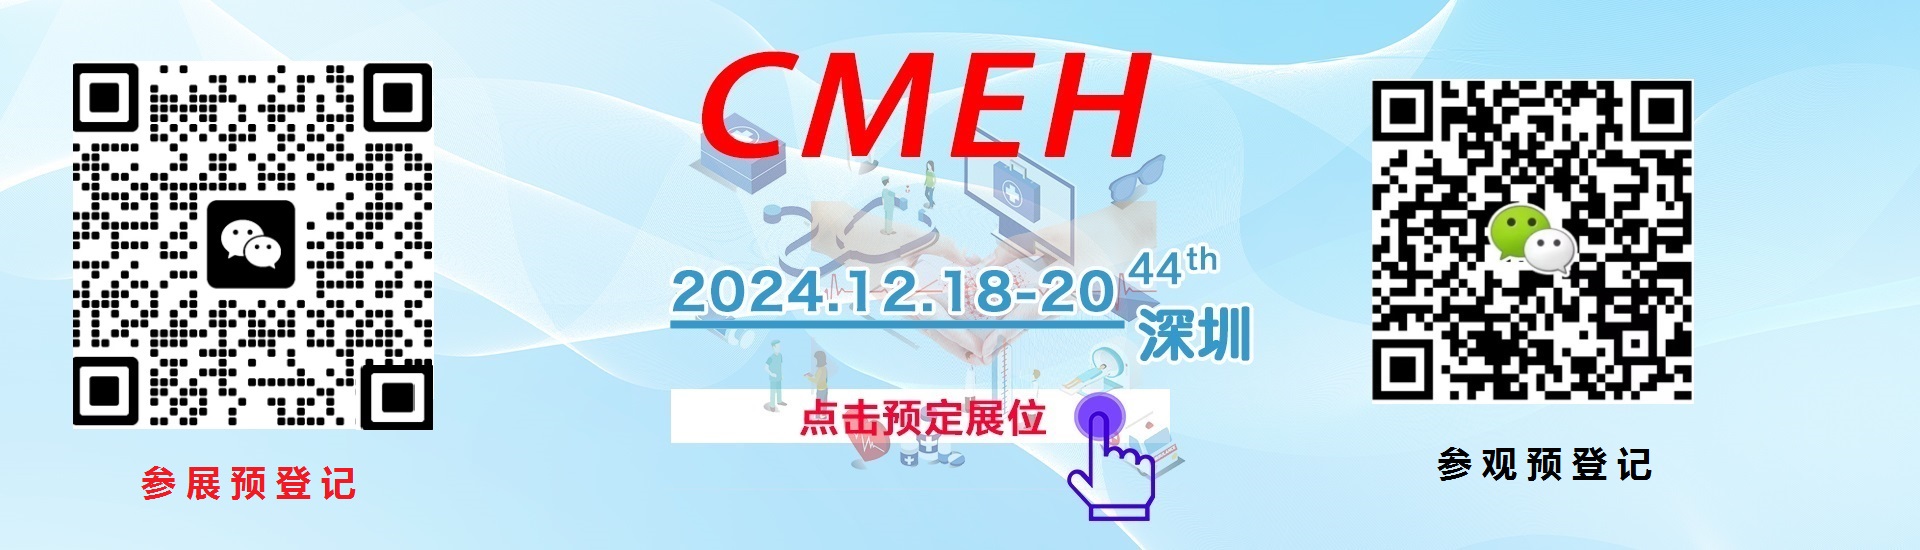 深圳国际医疗器械展览会2024年12月18-20日举办—点击申请展位